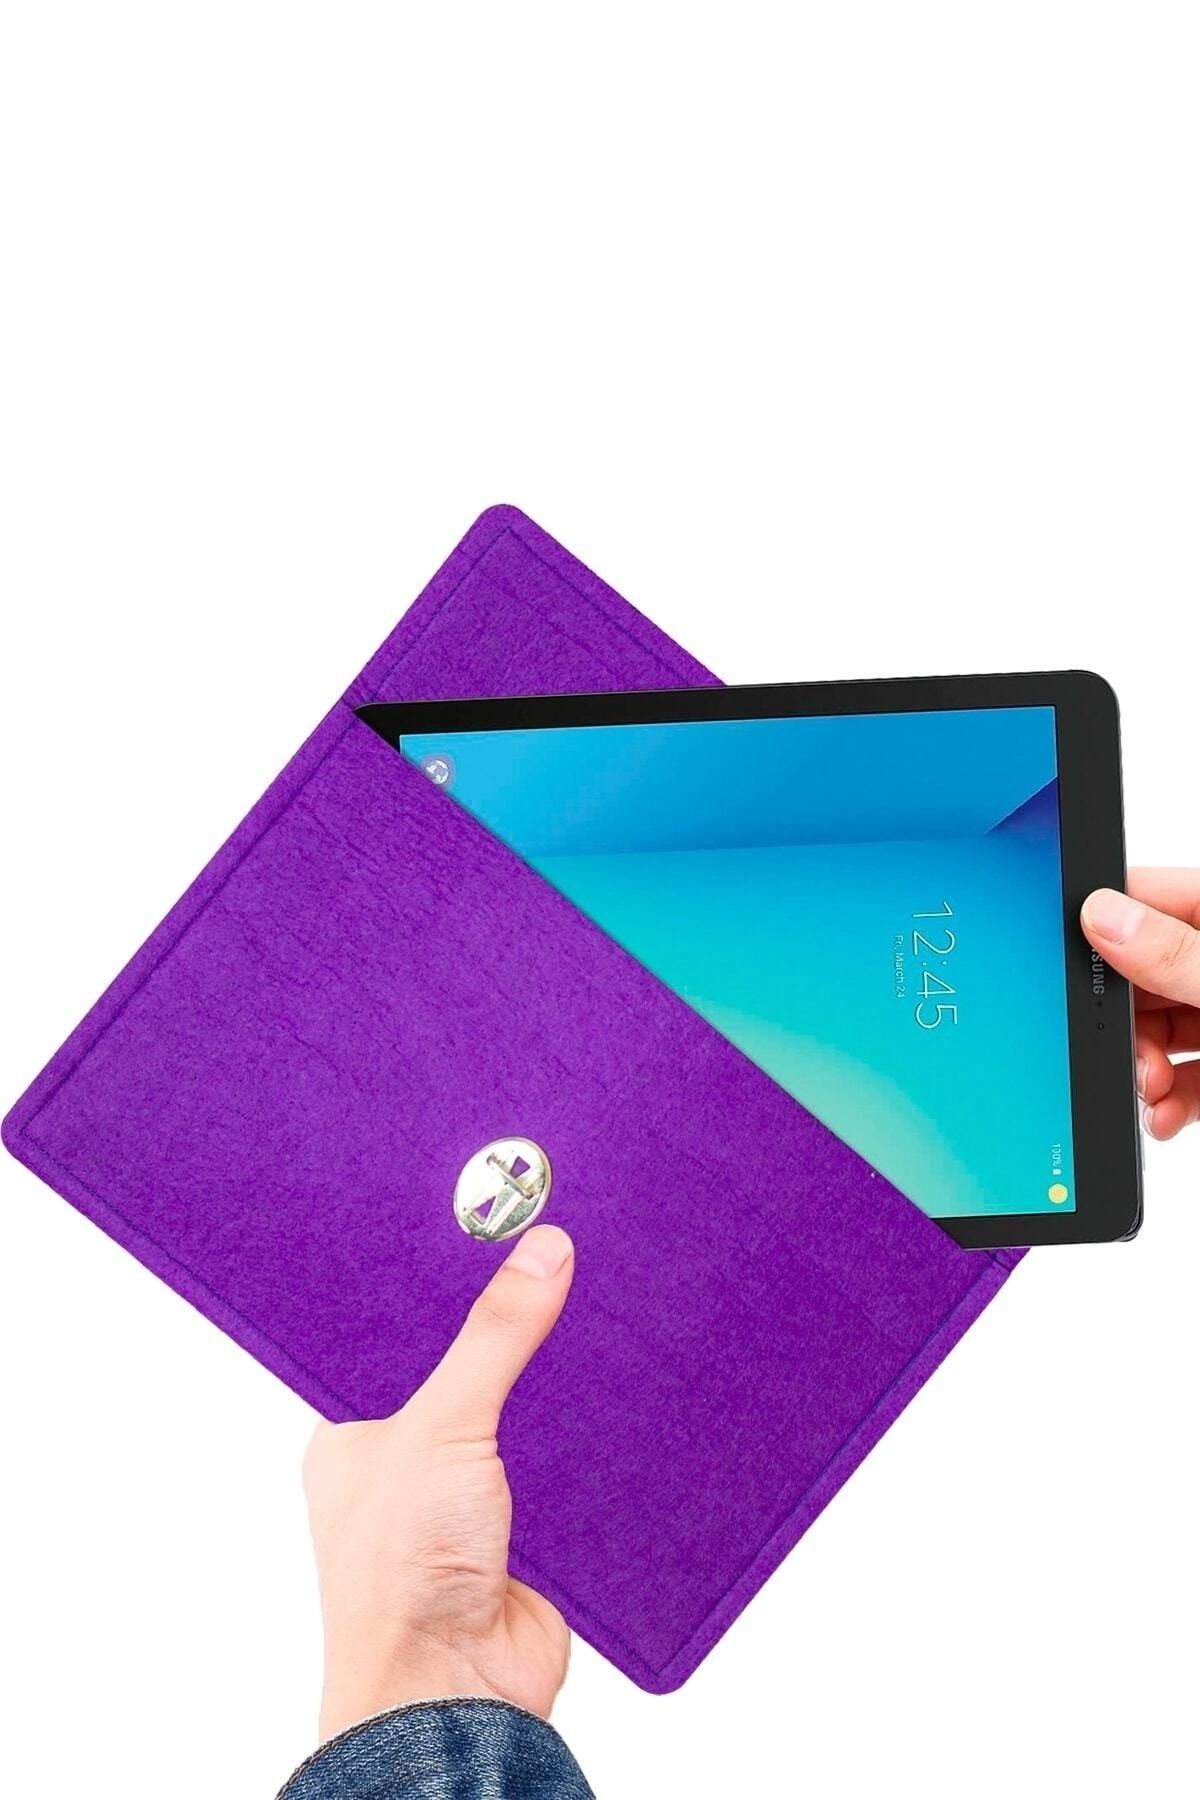 Ankaflex Mor Renk Keçe Tablet Taşımaya Uygun El Çantası